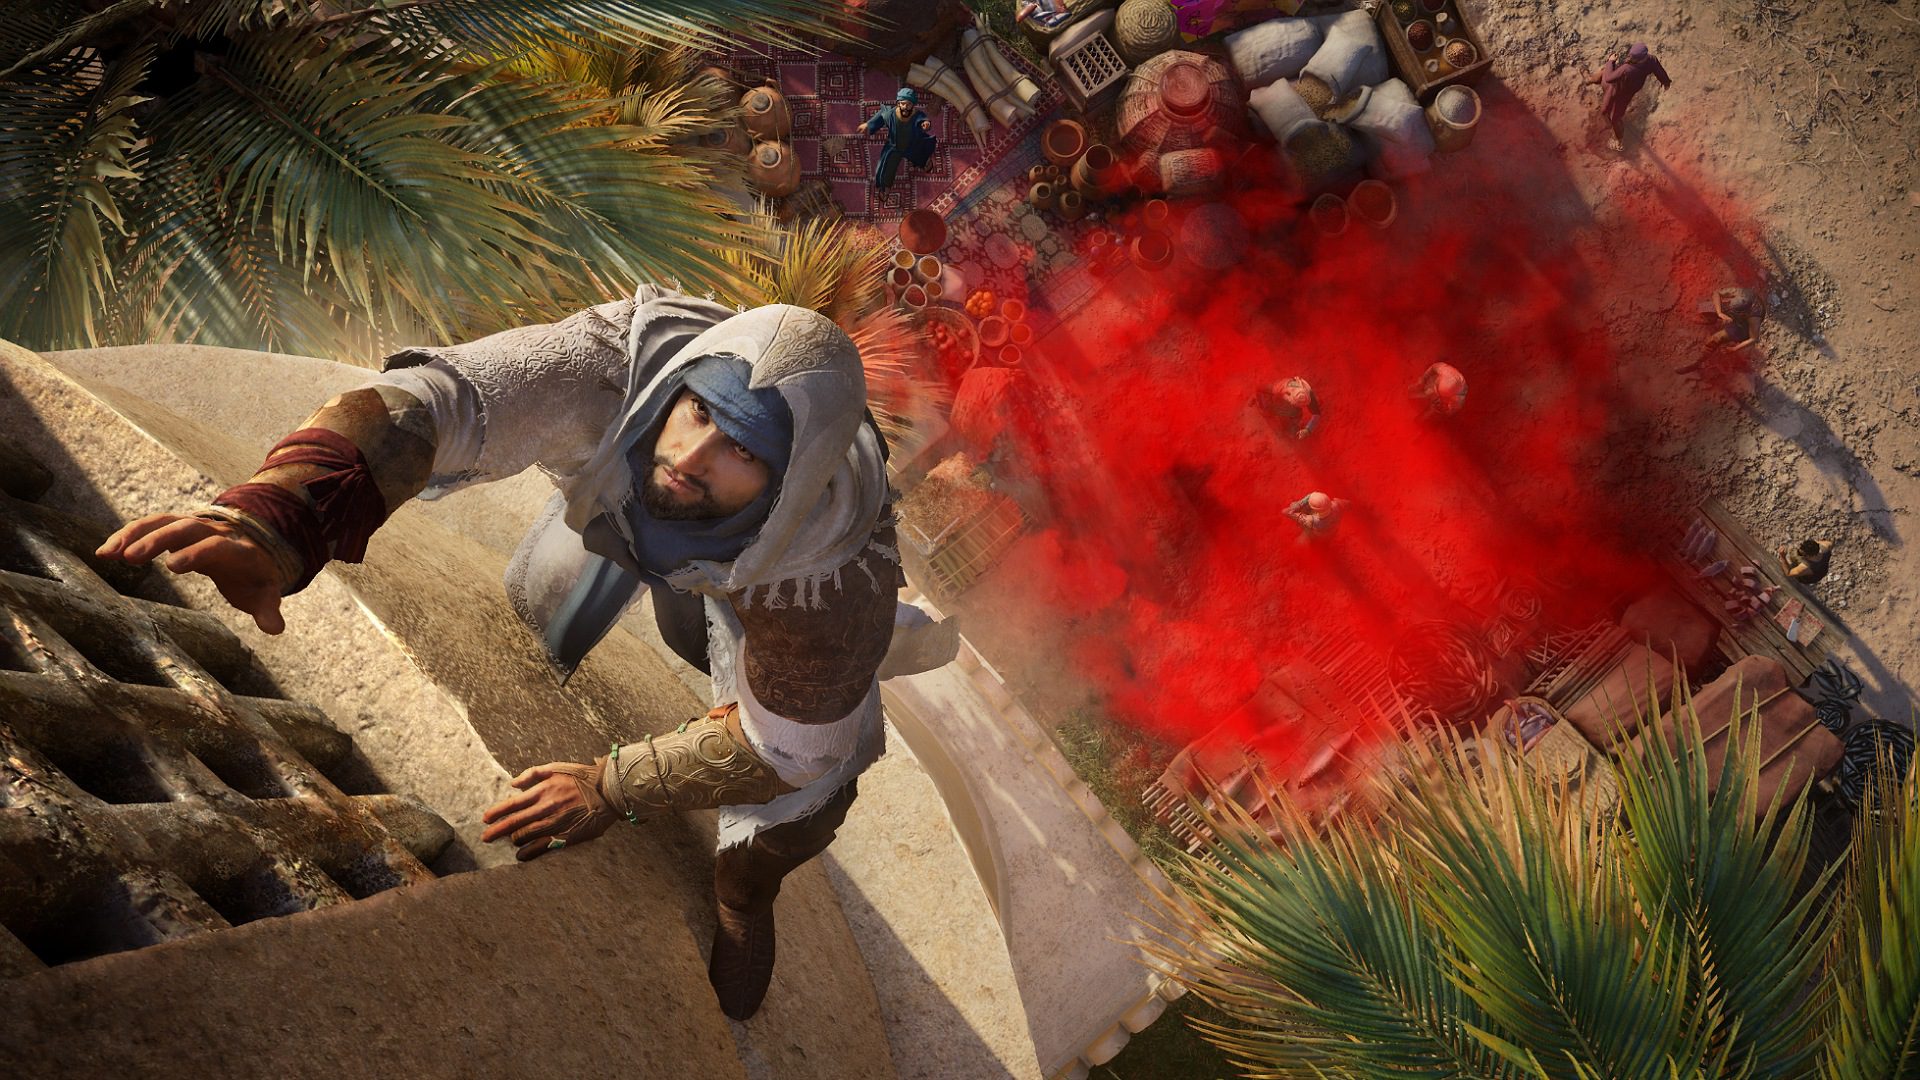 تریلر بازی Assassin's Creed Mirage